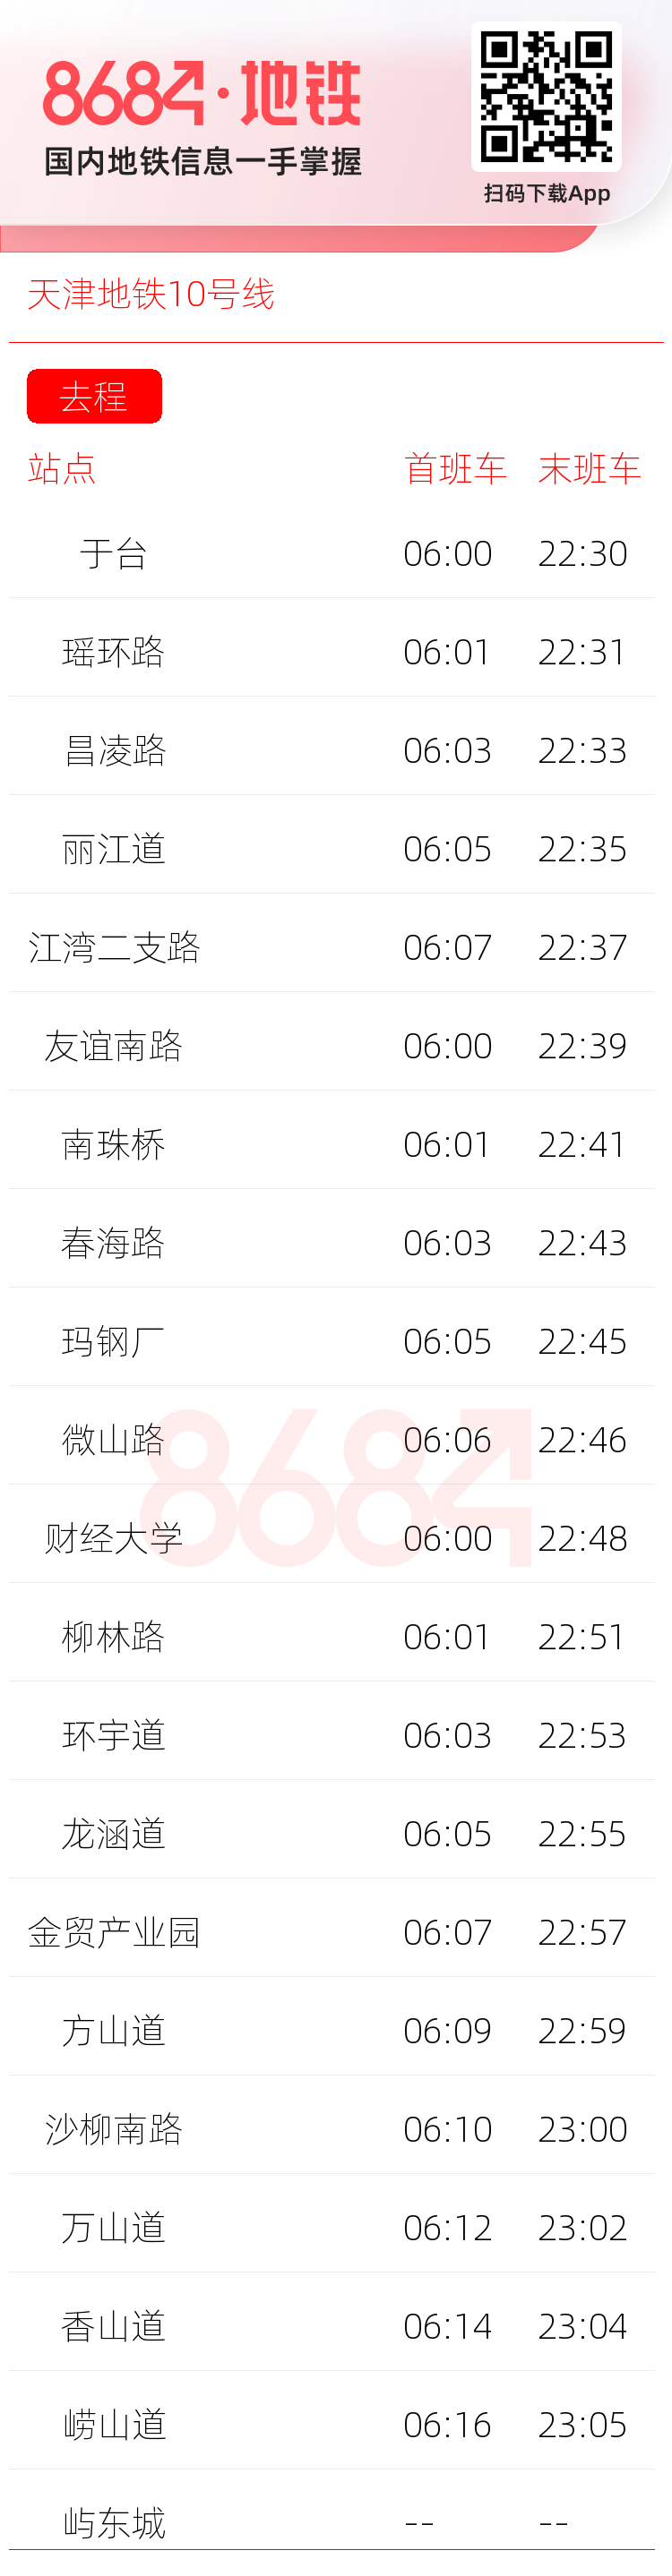 天津地铁10号线运营时间表